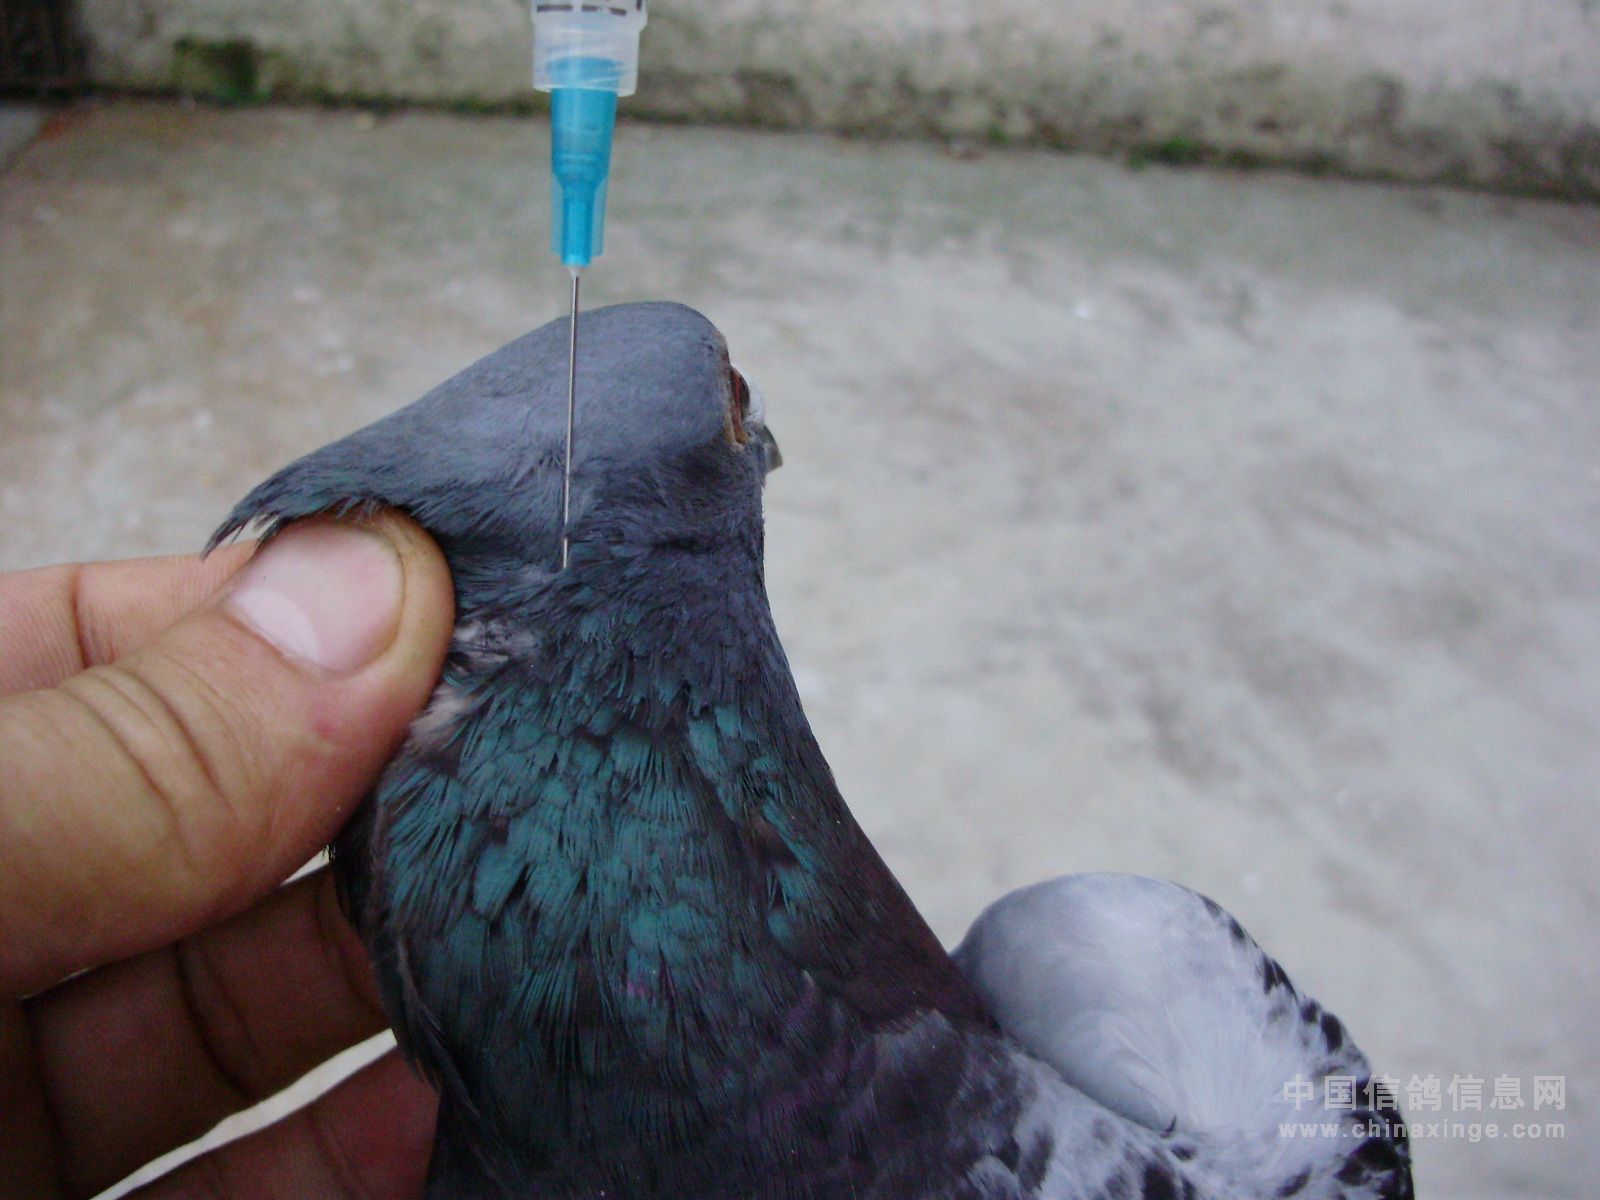 鸽子身上的寄生虫图片-图库-五毛网